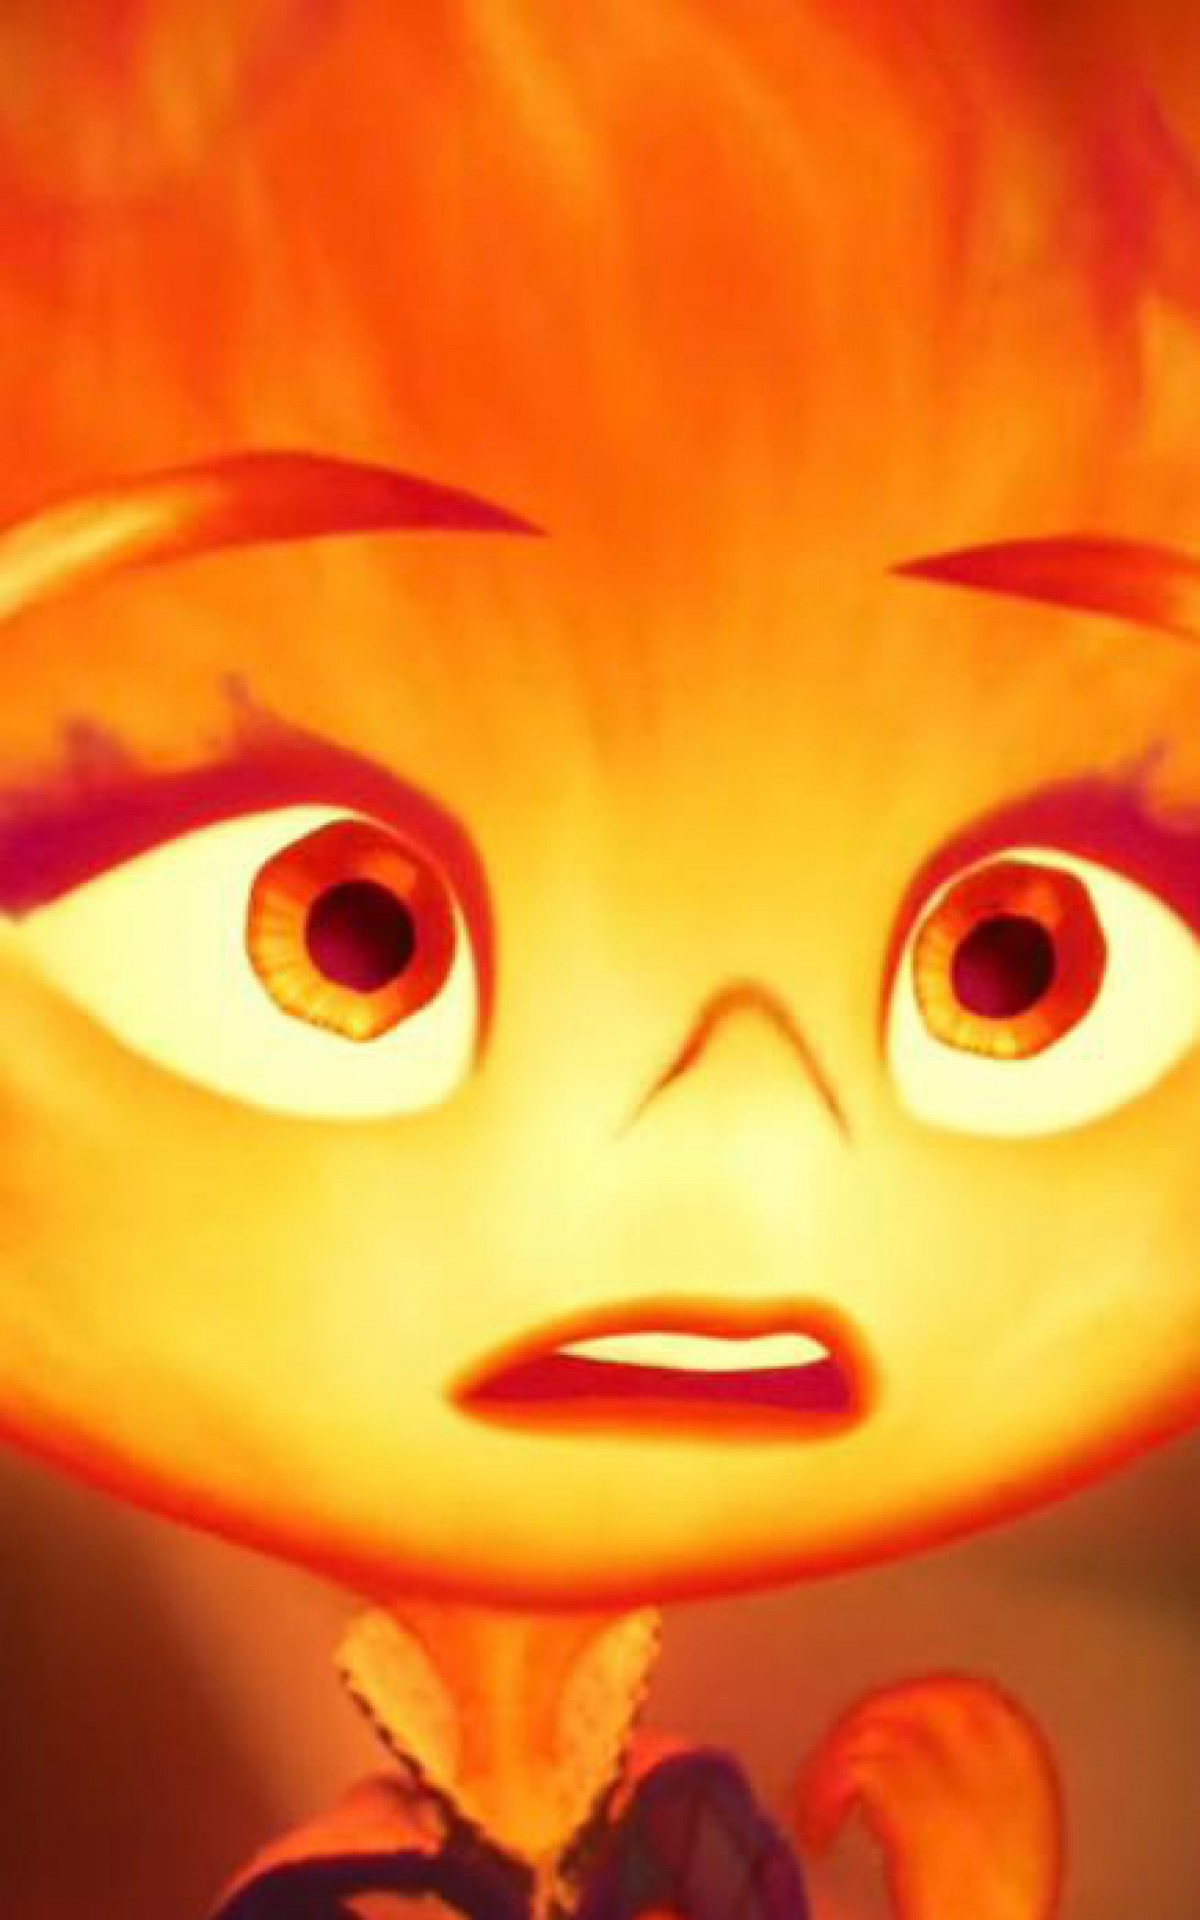 Água e fogo vão se misturar em 'Elementos', animação da Disney Pixar que  estreia nesta quinta :: Leiagora, Playagora